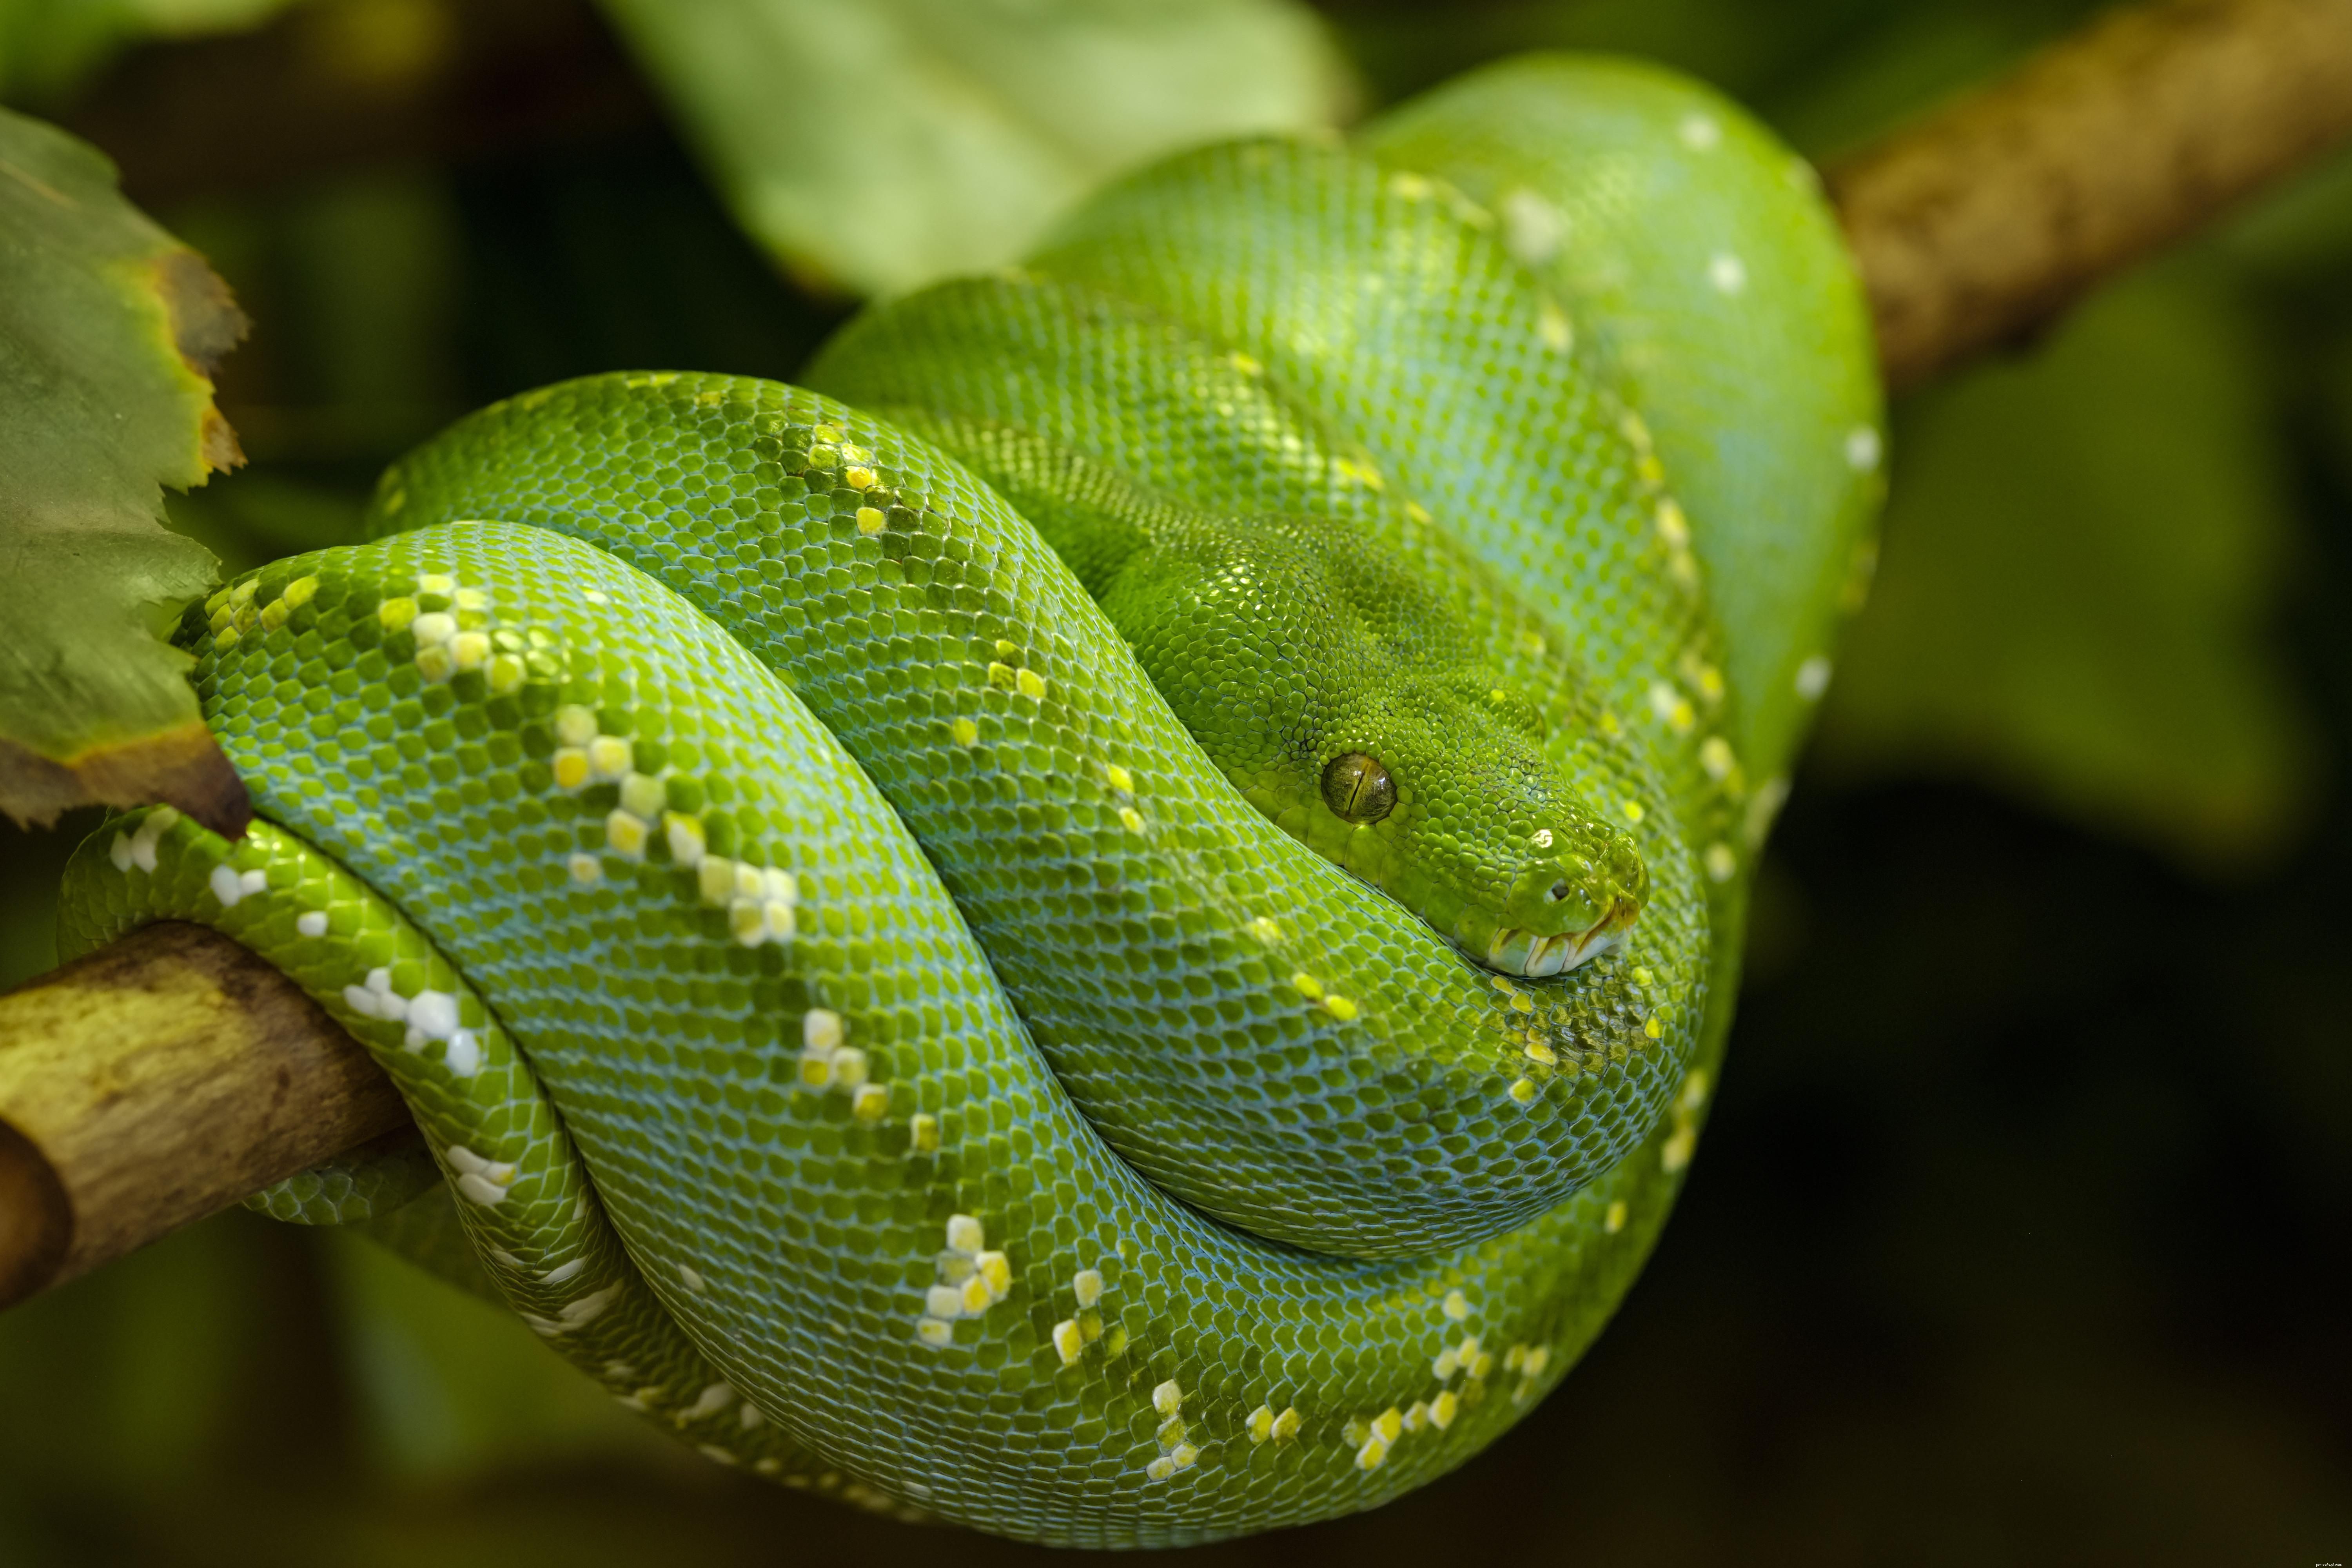 Espèces de serpent couramment gardées comme animaux de compagnie